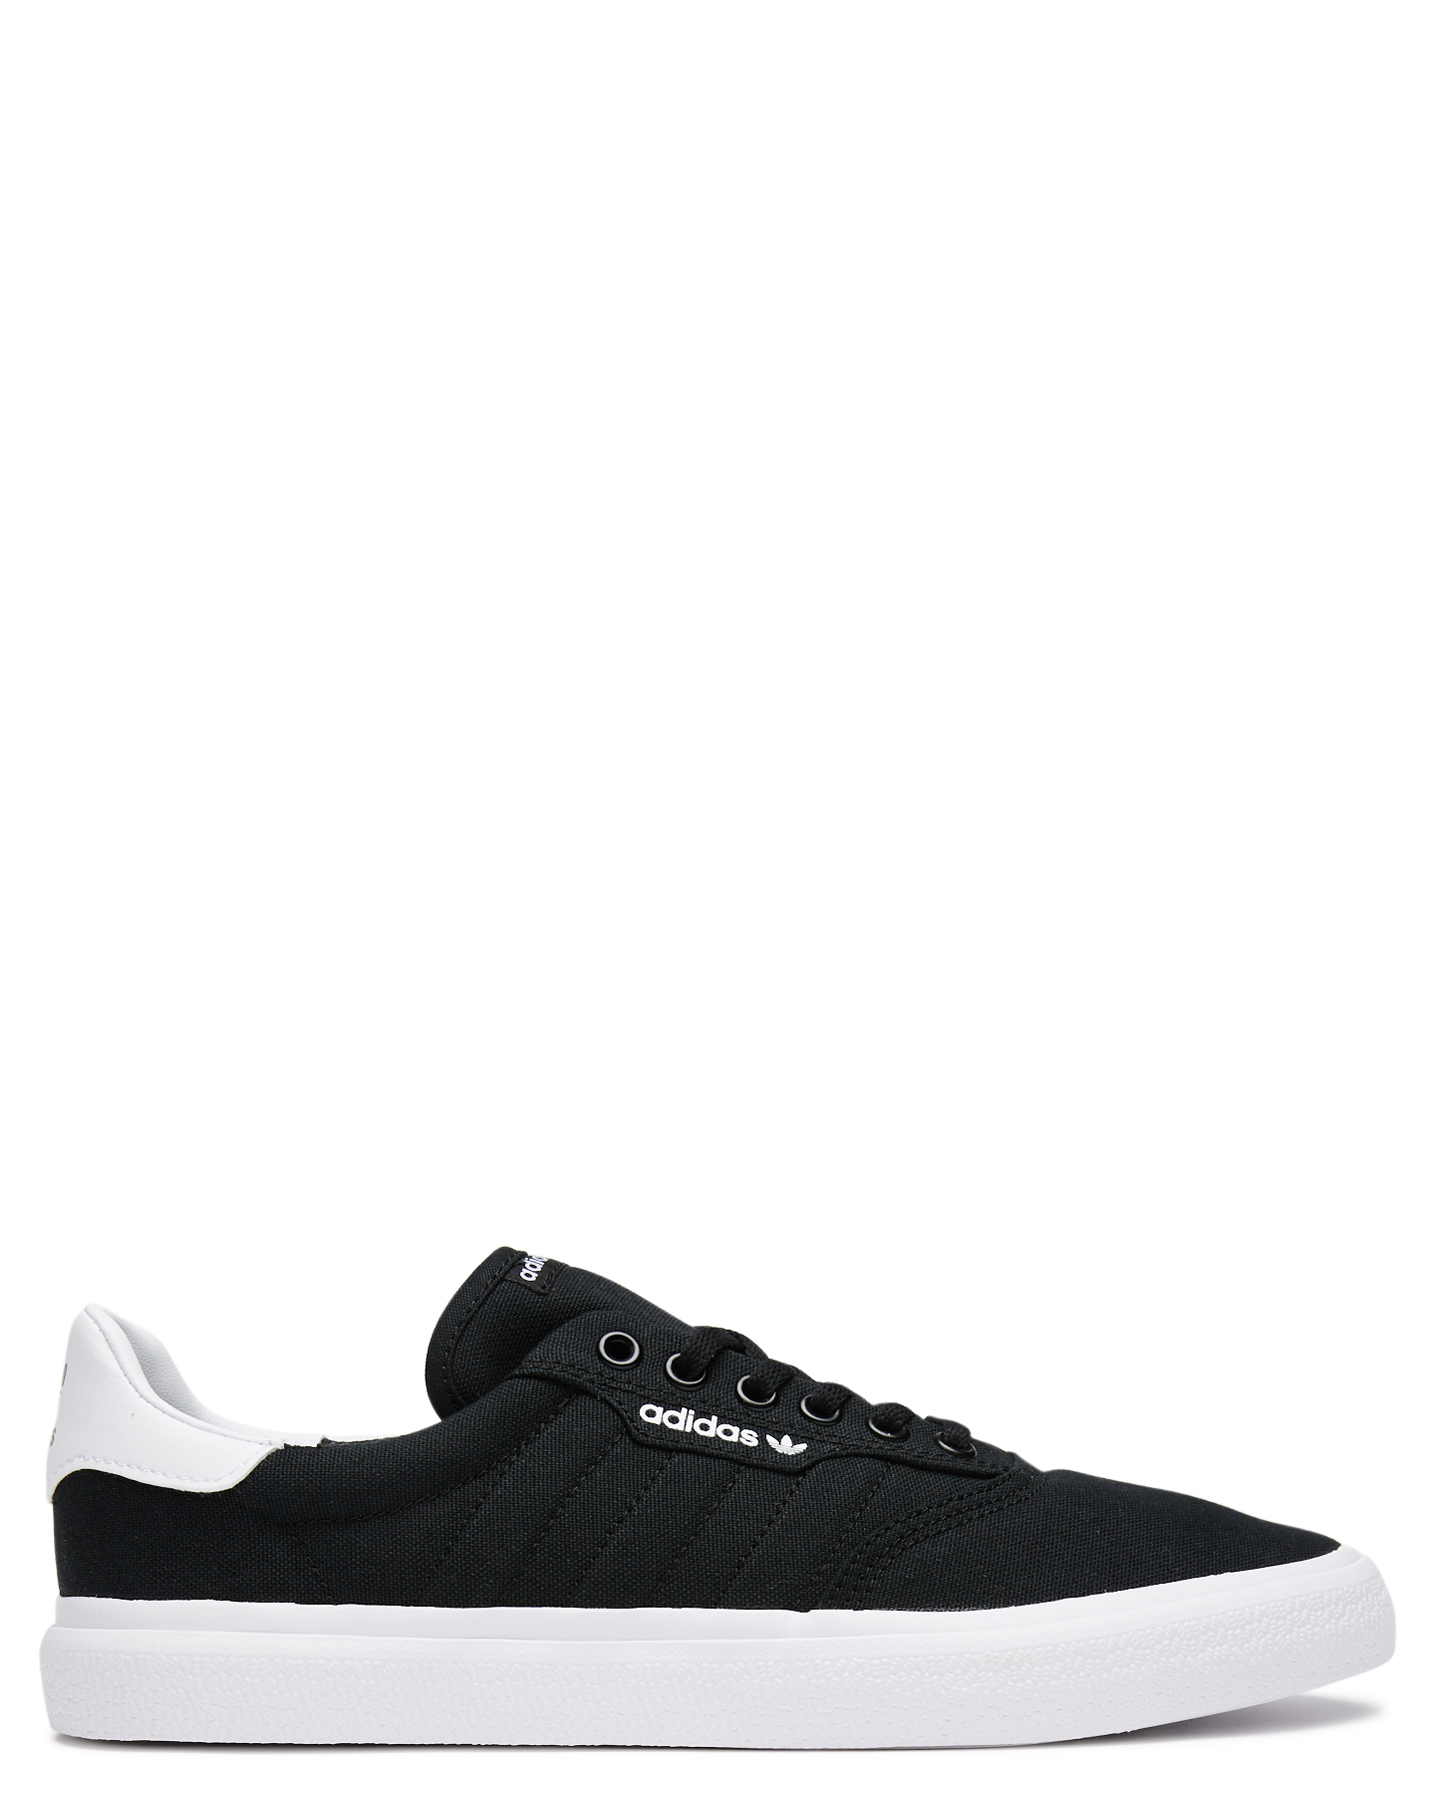 Adidas Mens 3Mc Shoe - Black White 